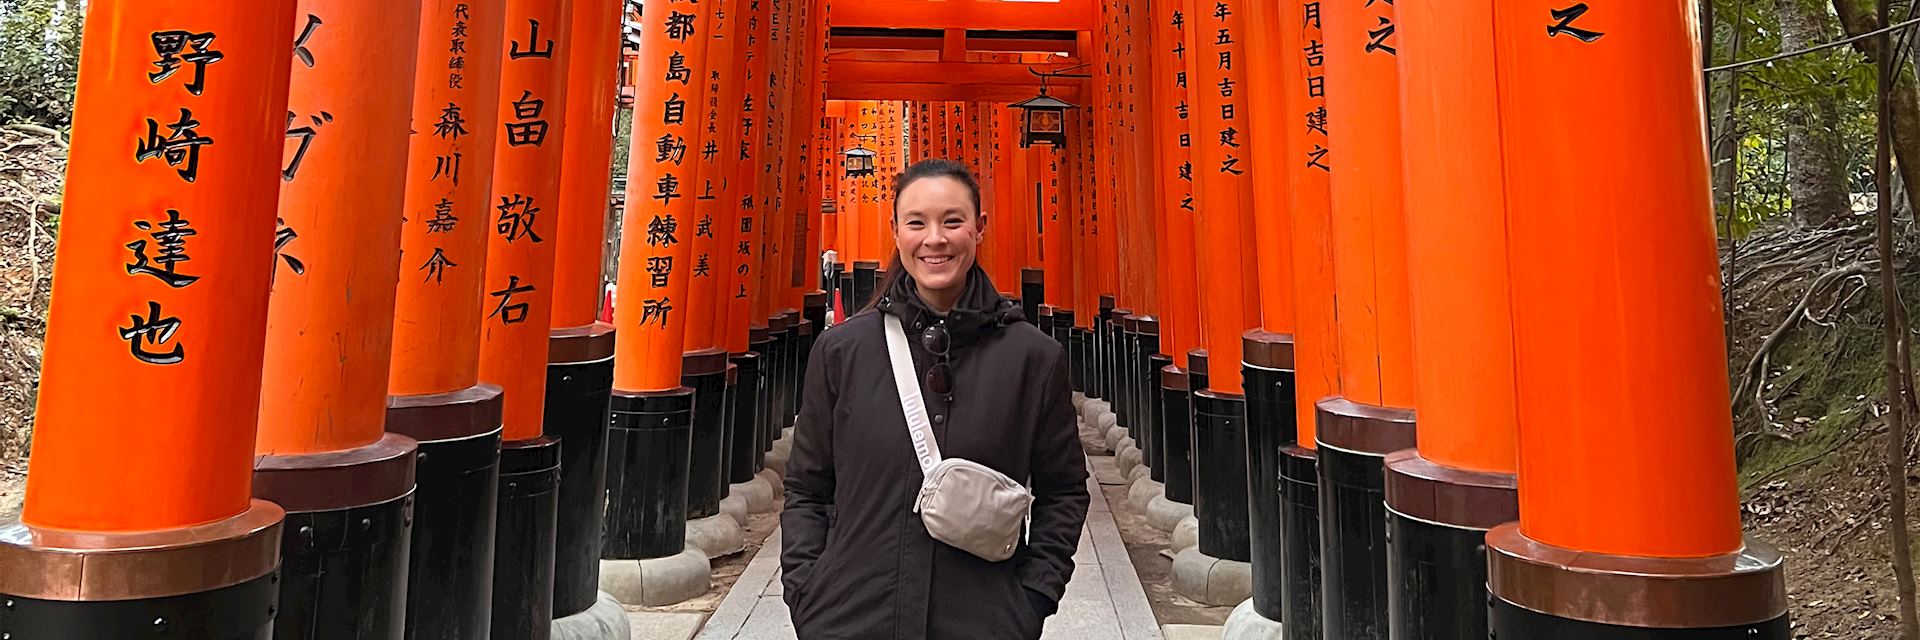 Stephanie at Fushimi Inari Shrine, Kyoto, Japan